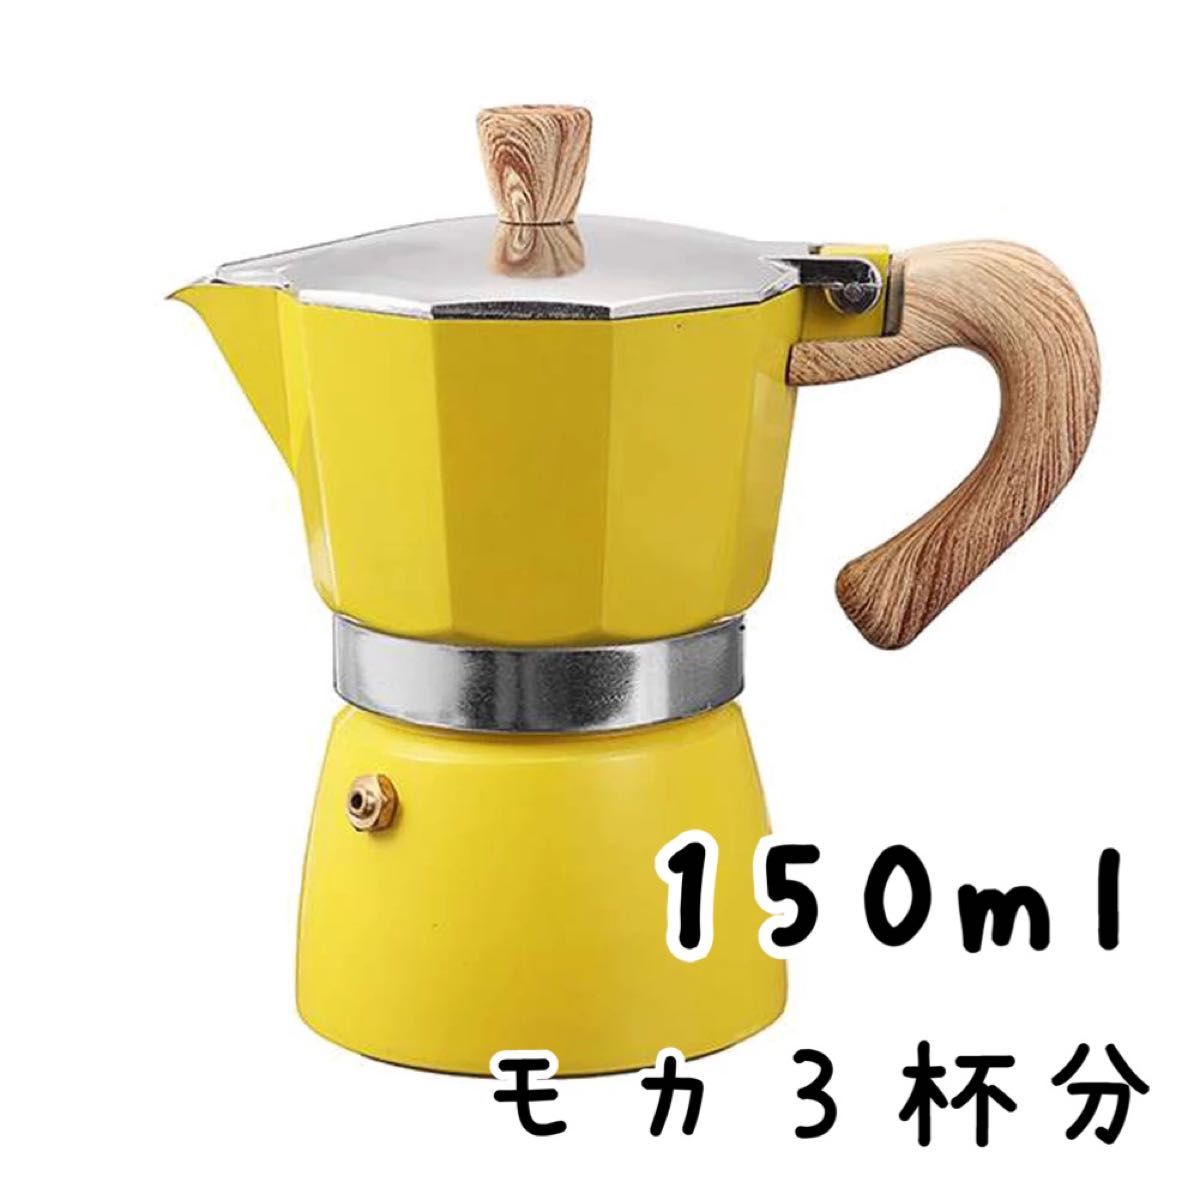 150ml コーヒーメーカー モカ3杯分 エスプレッソ アルミポット